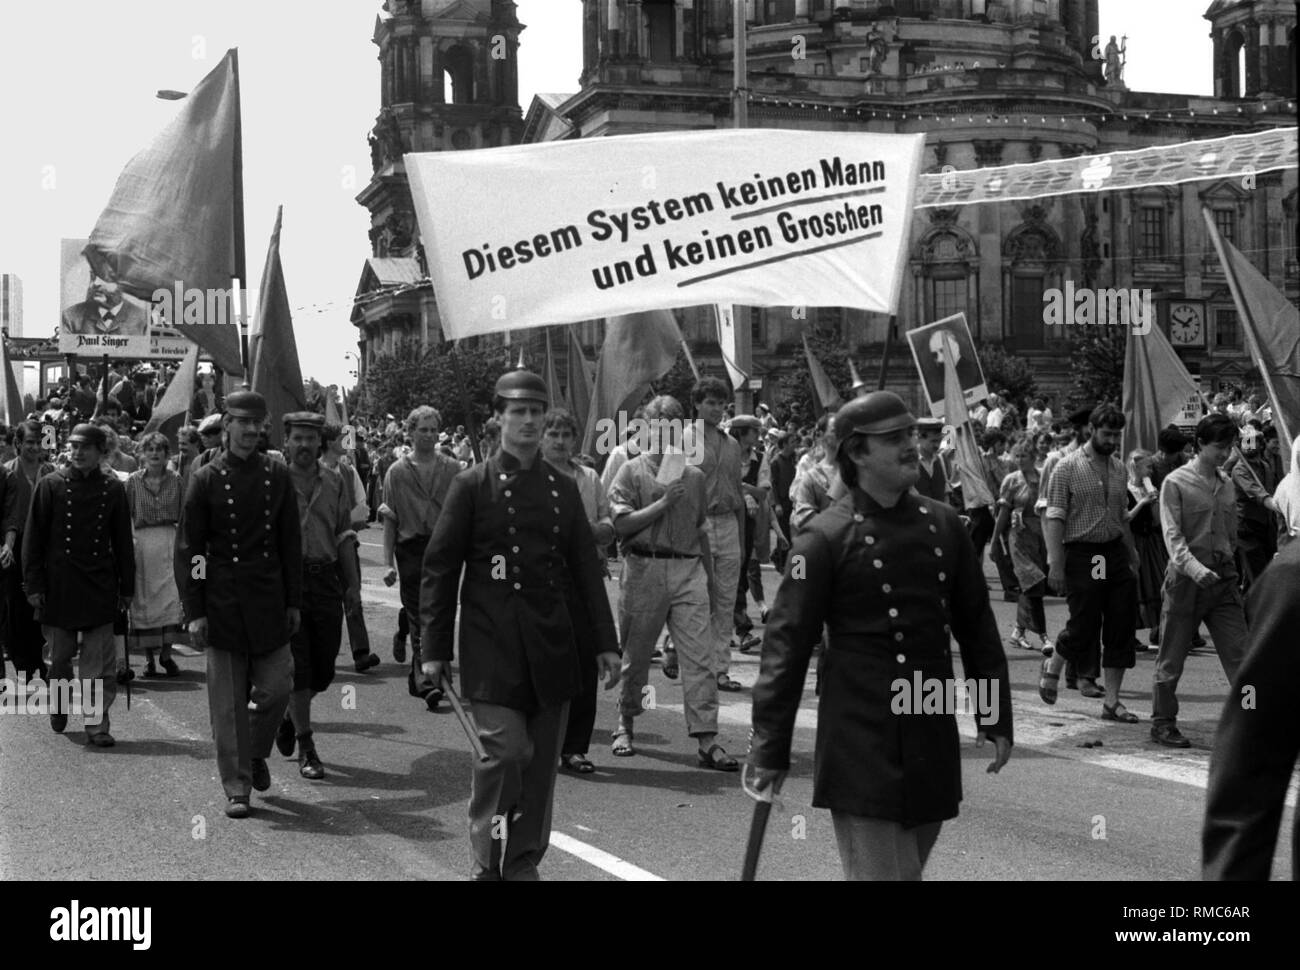 Germania, Berlino, 4 luglio, 1987: 750° anniversario di Berlino. Gli uomini  con Pickelhaube (spiked casco). Sul banner (traduzione in inglese): " Non è  un uomo e non un centesimo per questo sistema' Foto stock - Alamy